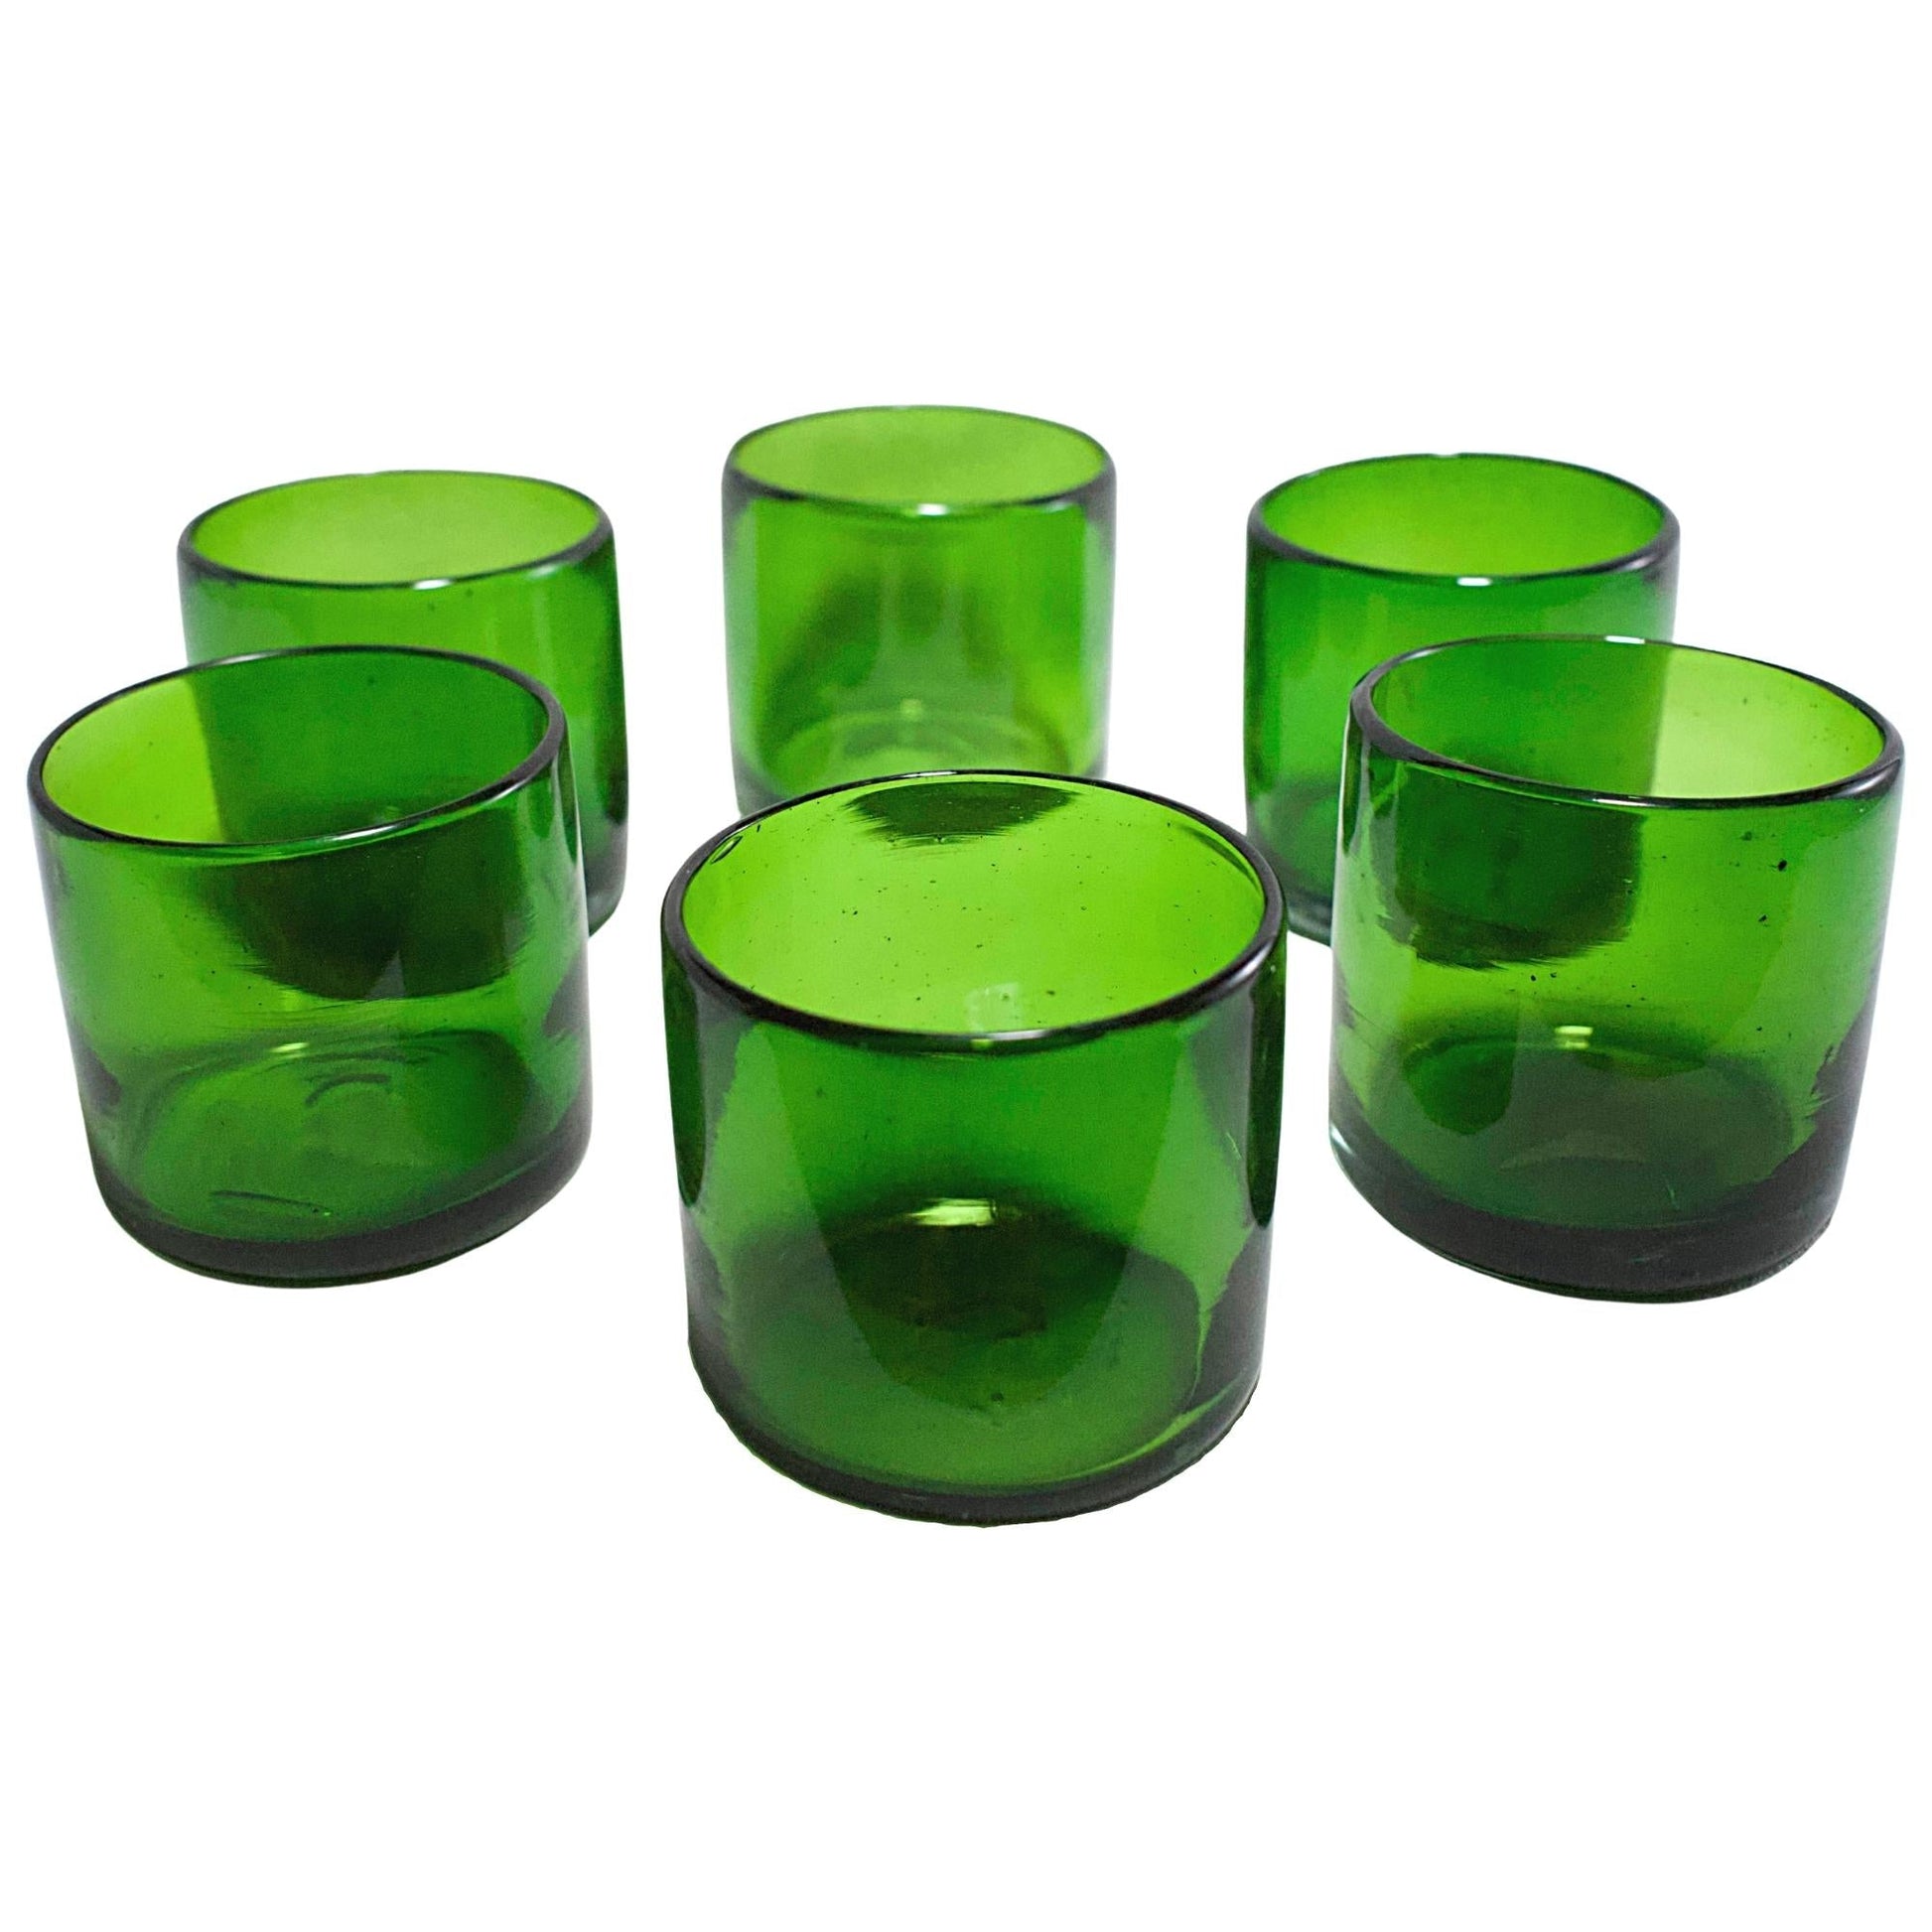 https://www.marey.com.mx/cdn/shop/products/vasos-vidrio-soplado-set-de-6-piezas-hechos-artesanalmente-en-mexico-verde-solido-old-fashioned-8-oz-mareyhomegoods-750112.jpg?v=1692962691&width=1946